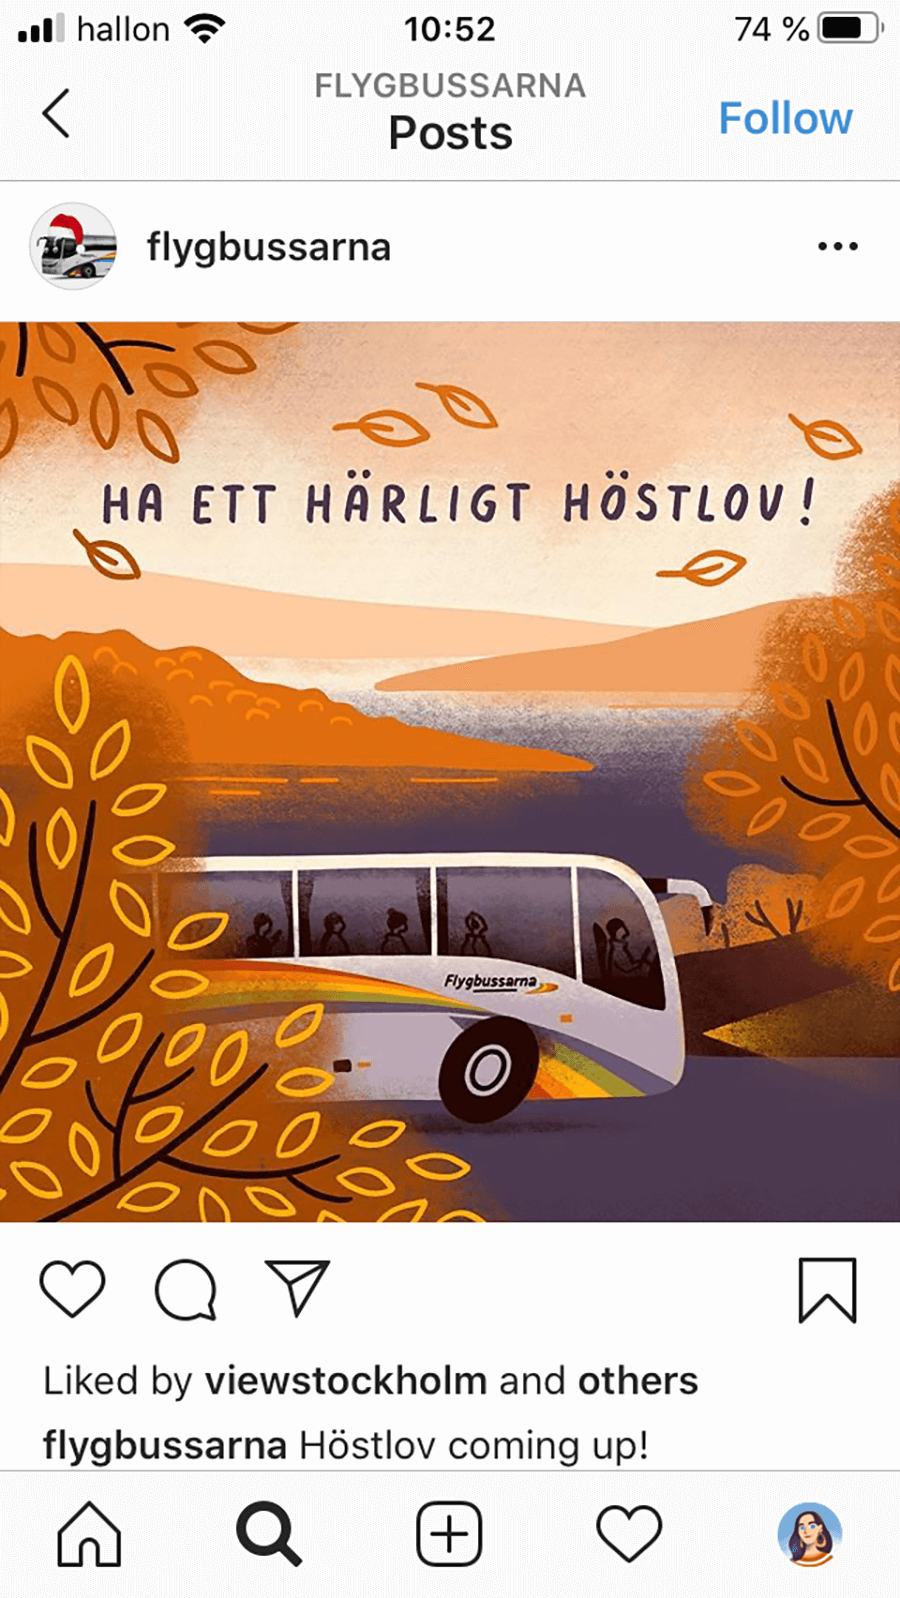 Sasha-Kolesnik_flygbussarna_bus_autumn_illustration_social_1